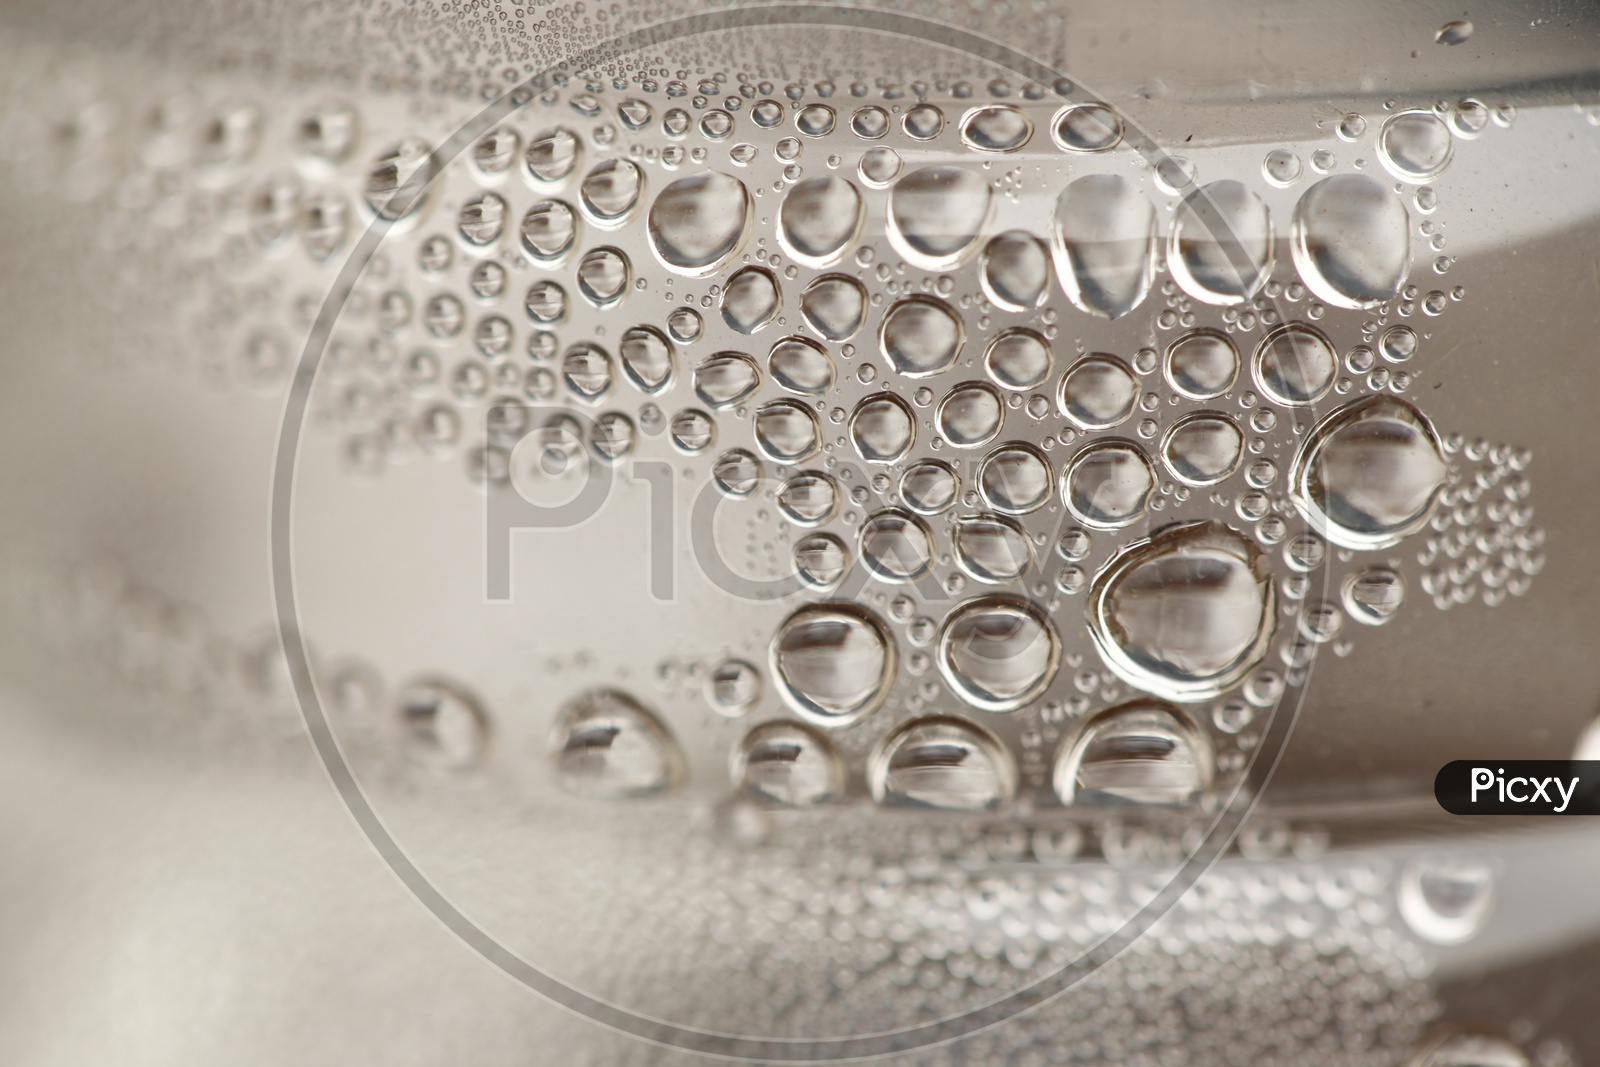 Close up shot of water drops